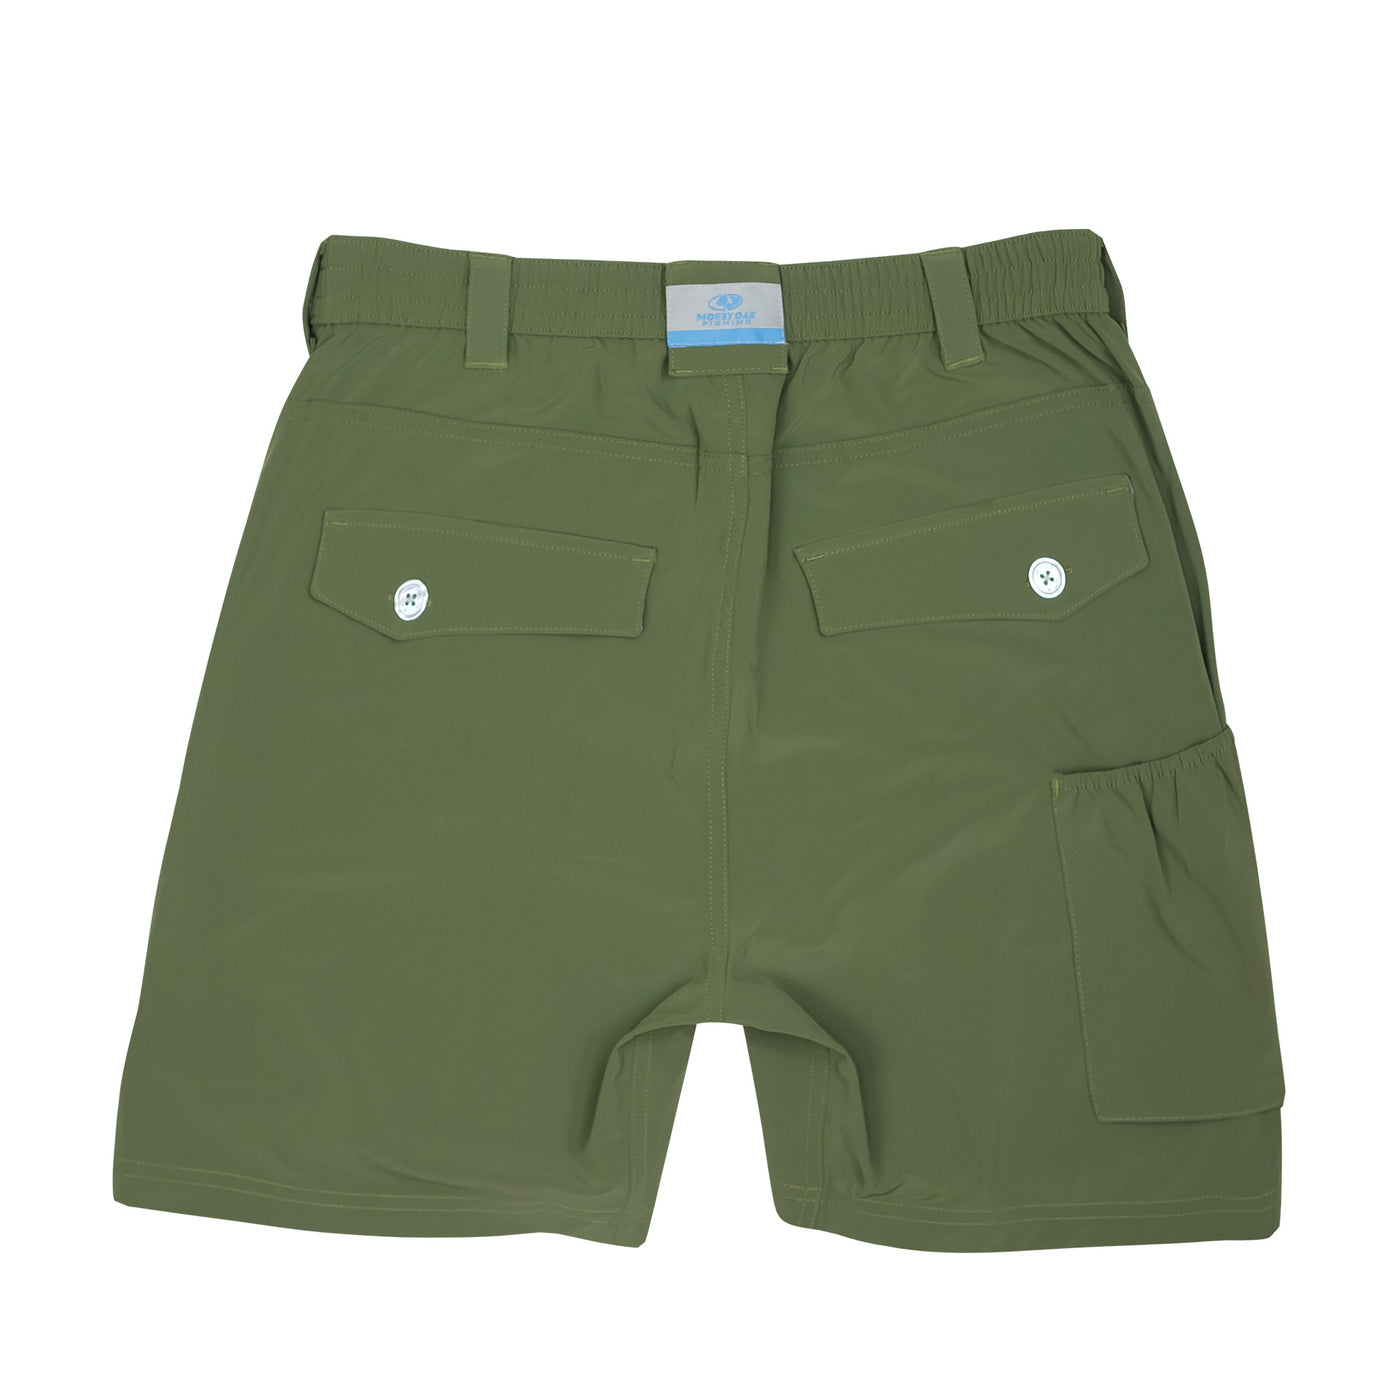 Mossy Oak Men's Flex Fishing Shorts 